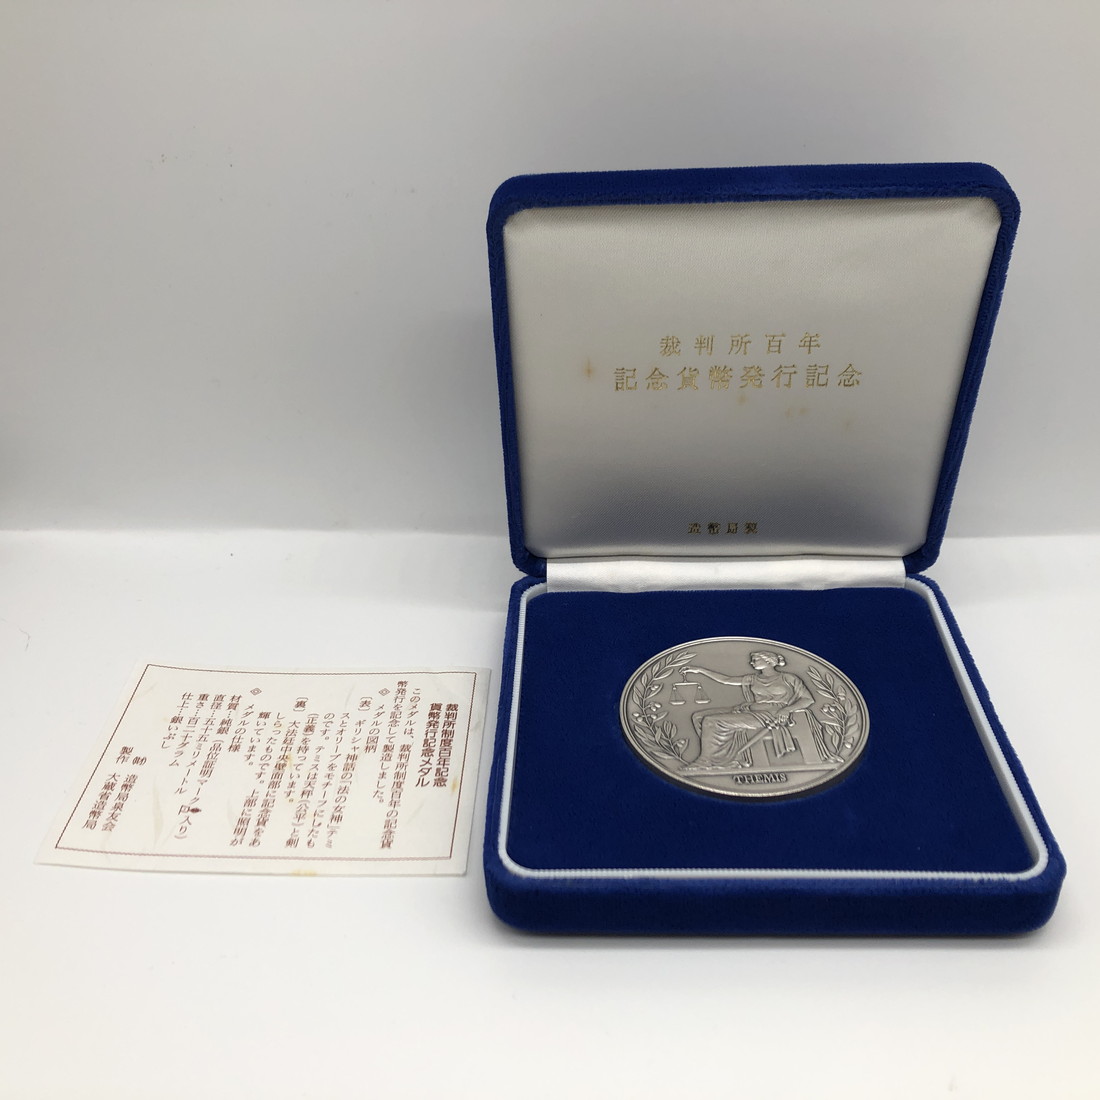 裁判所百年記念貨幣発行記念メダル